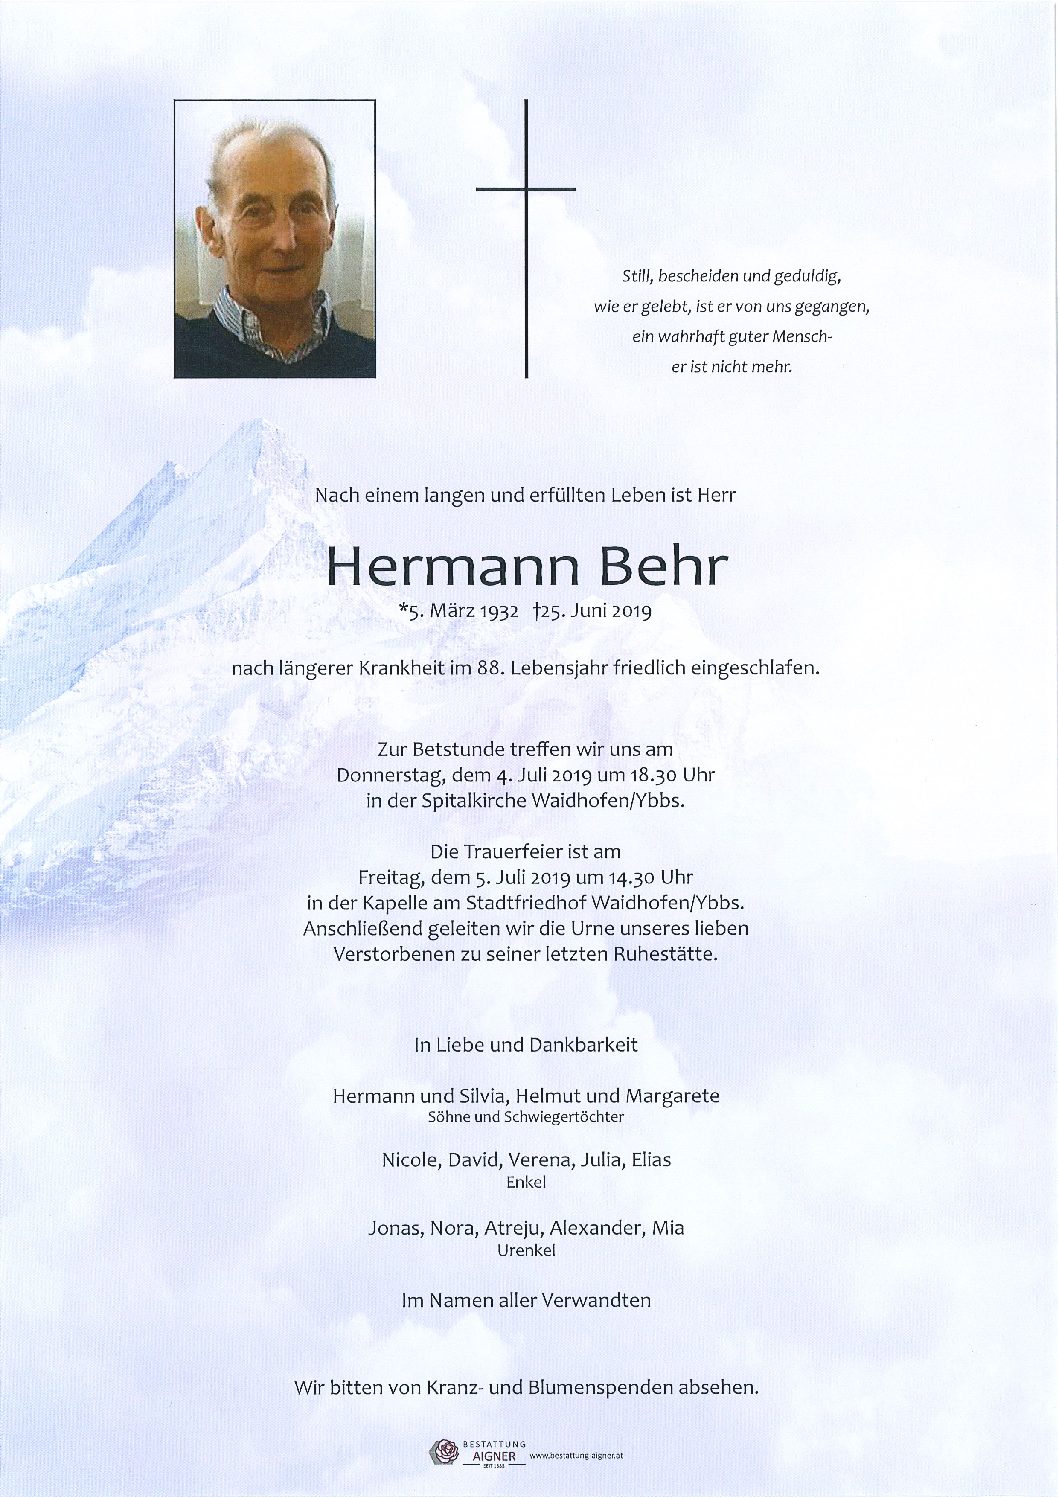 Hermann Behr